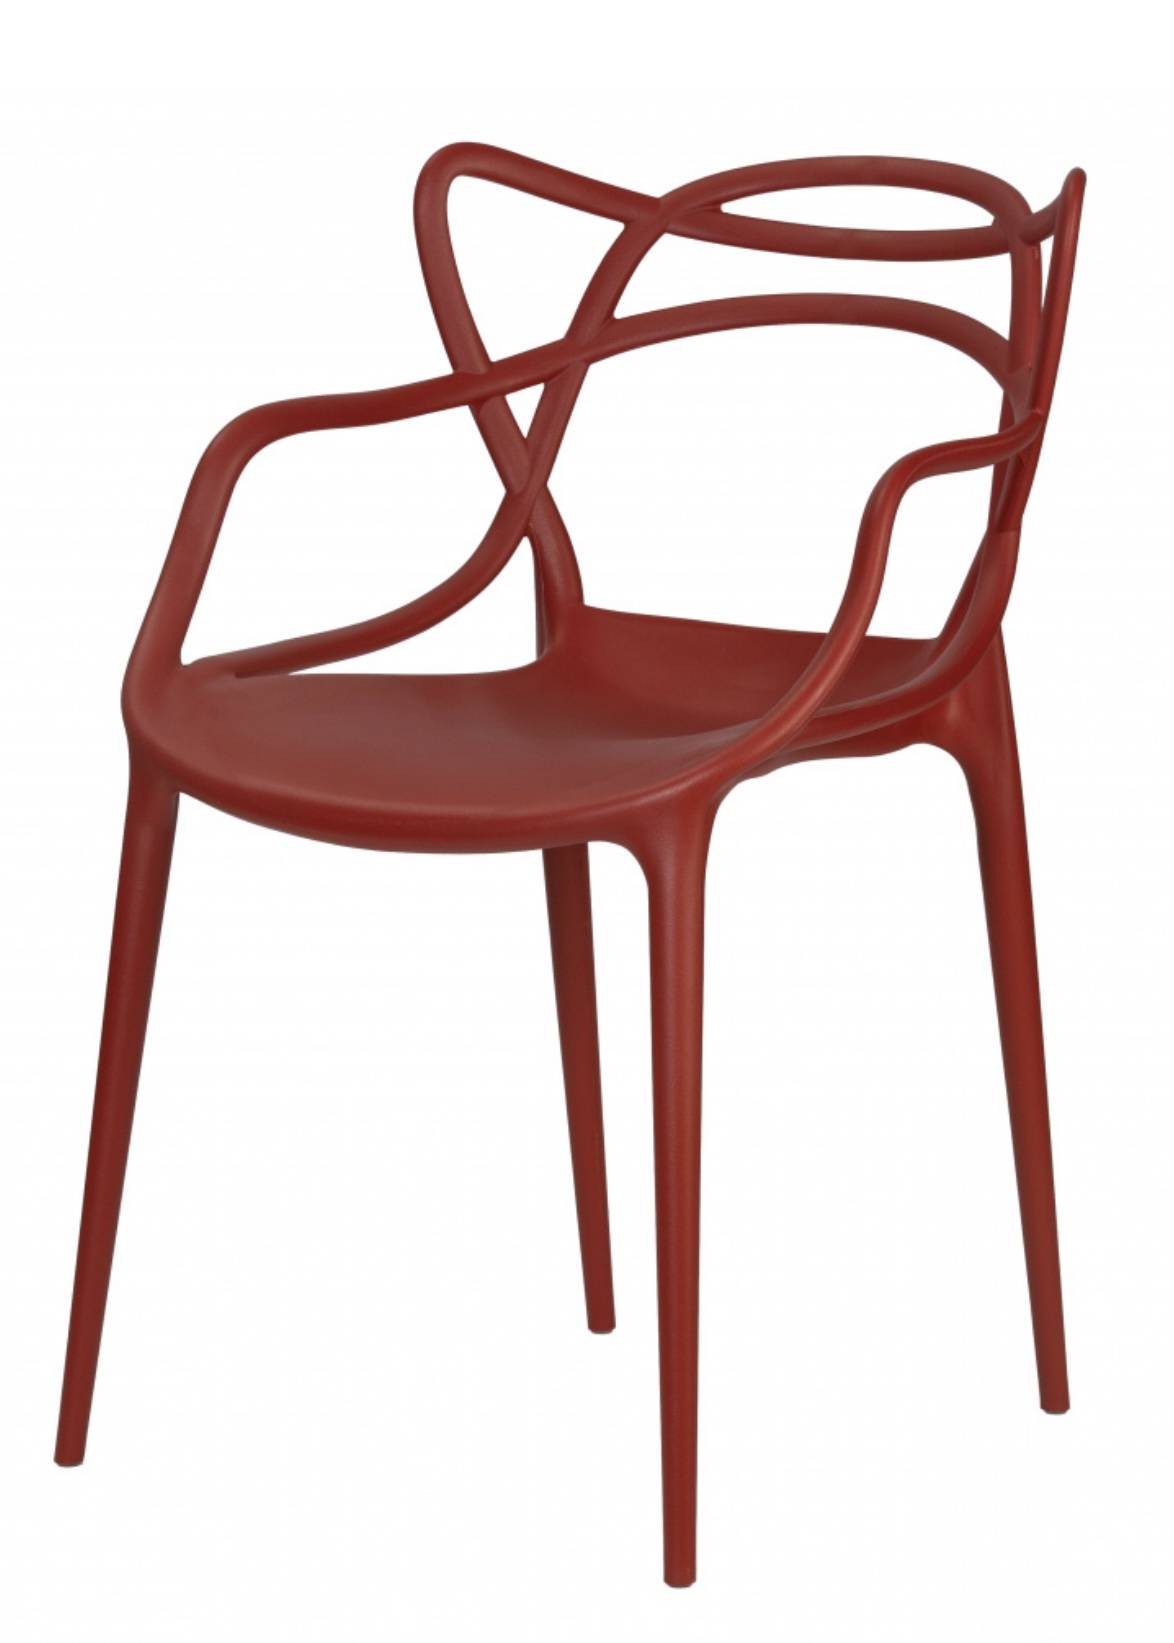 Купить красный стул Masters в Raroom